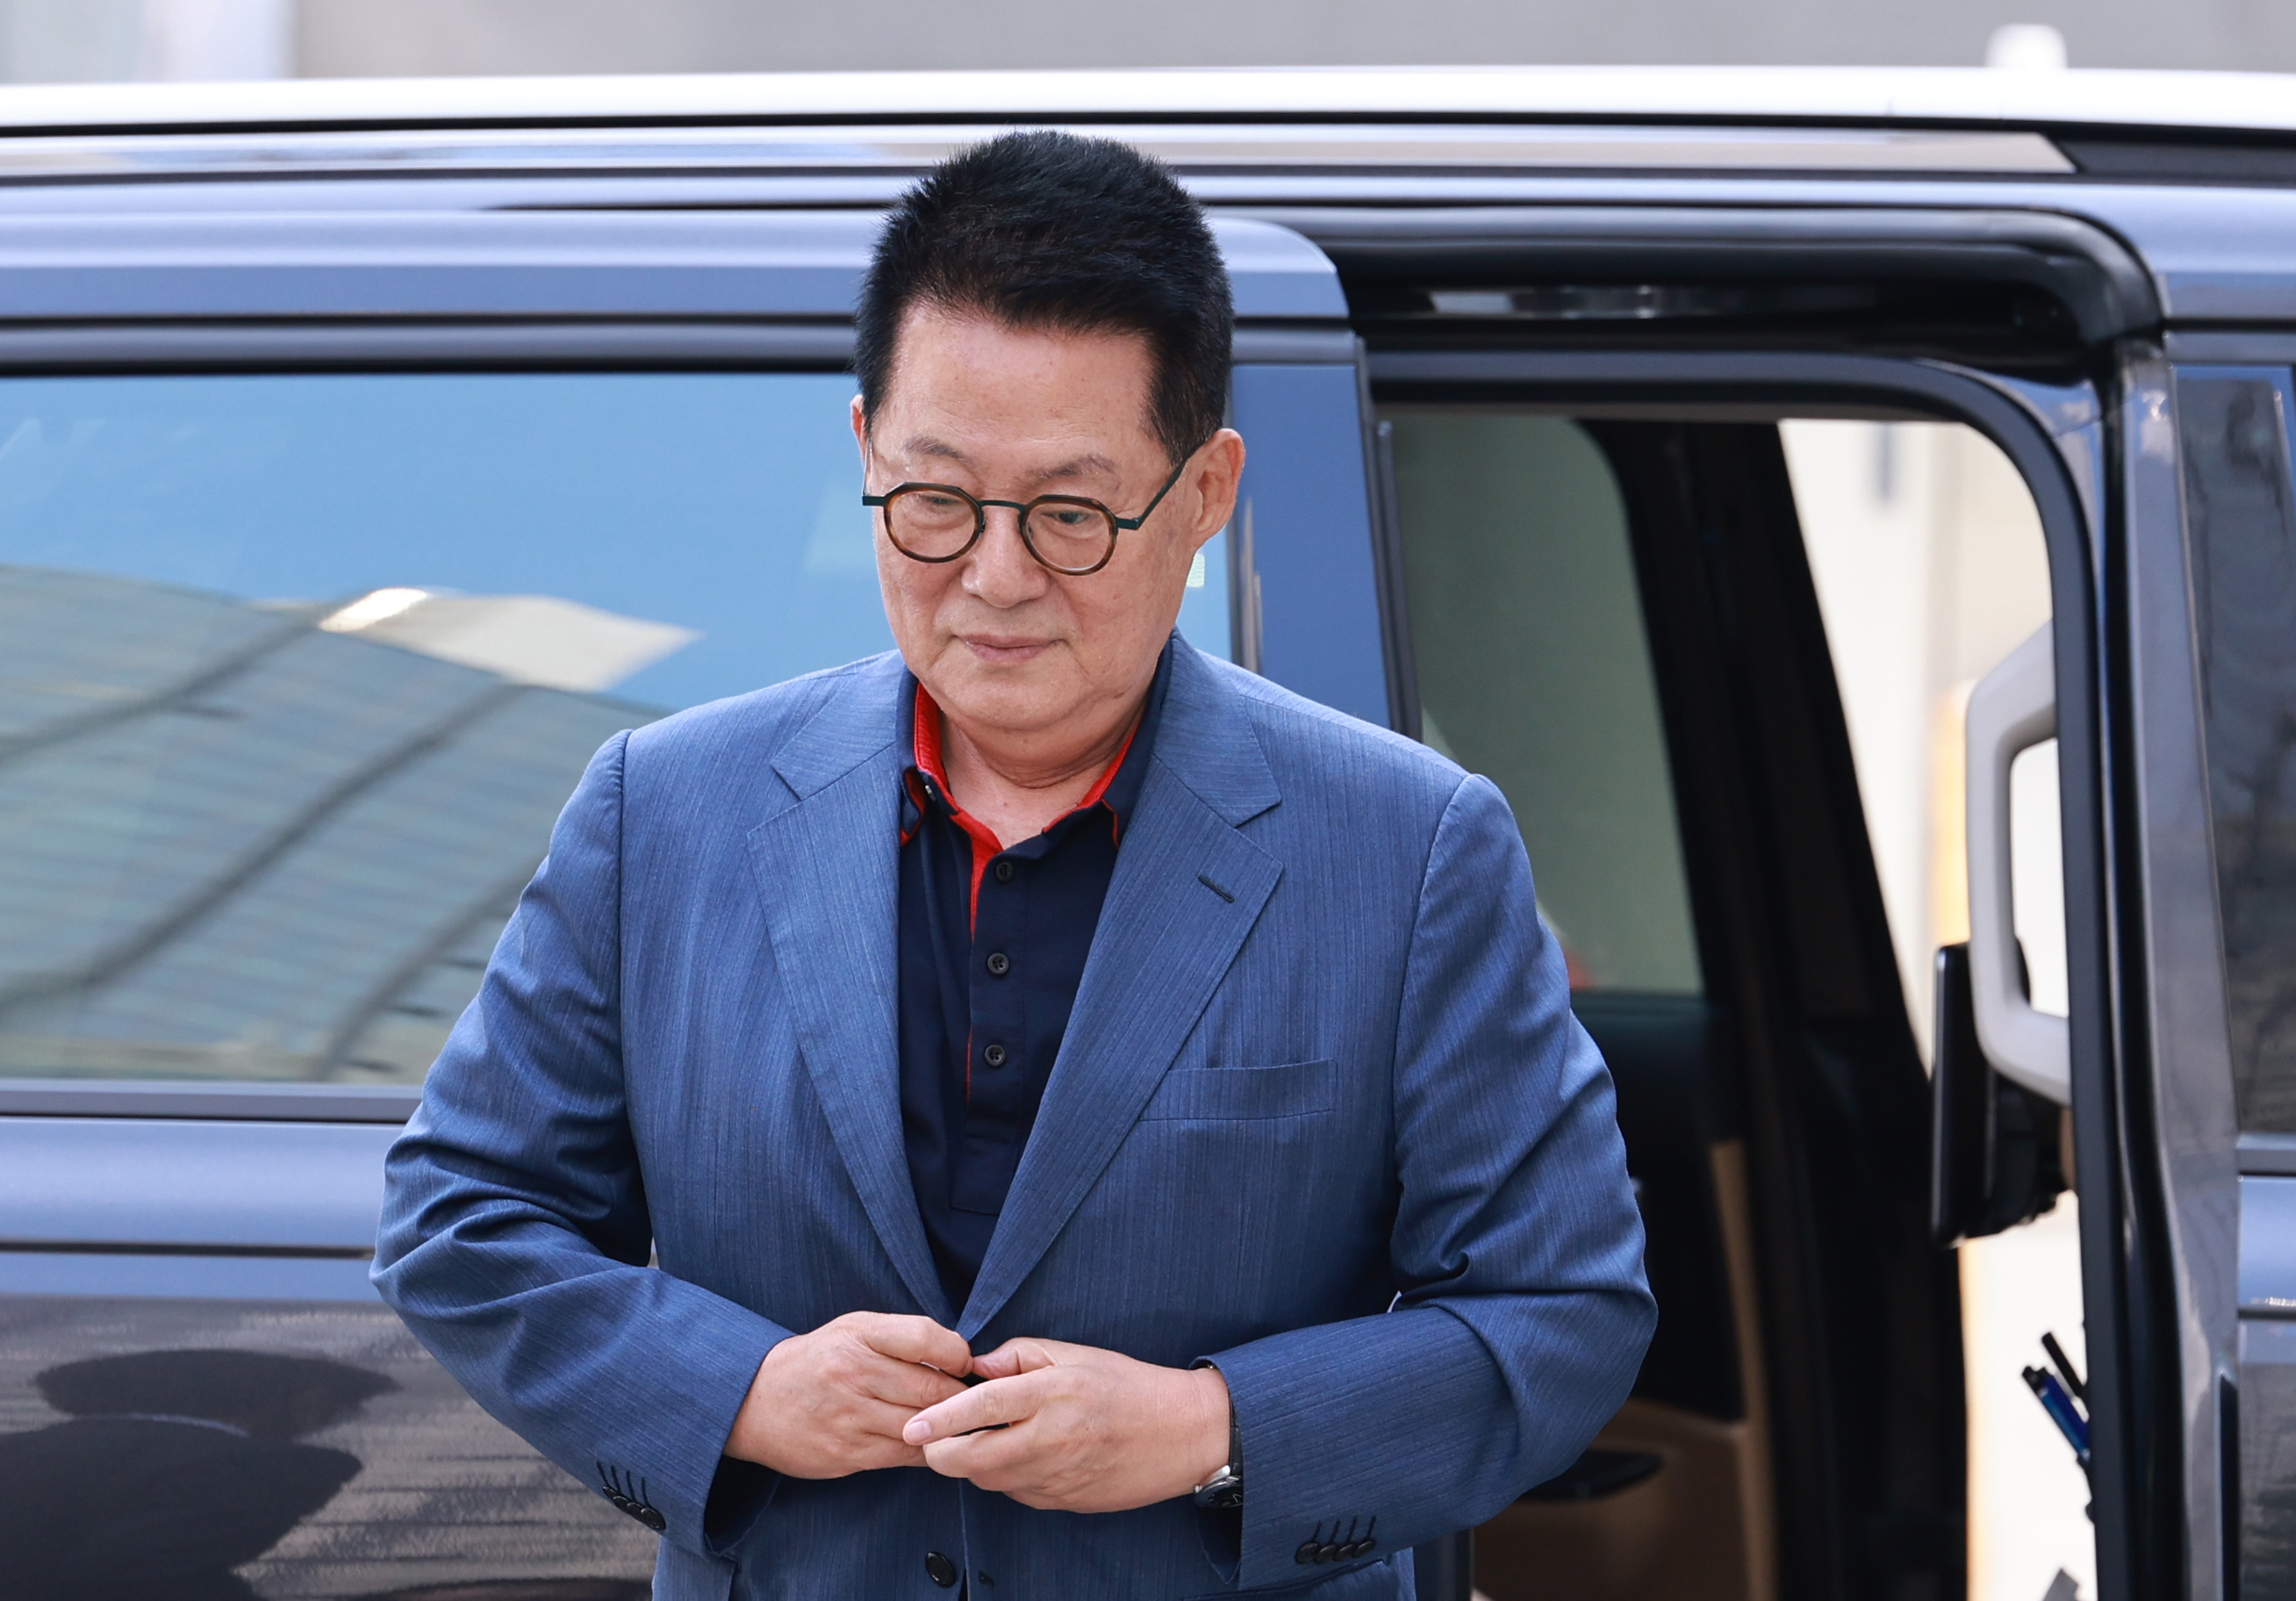 재임 시절 채용 비리 의혹으로 수사를 받는 박지원 전 국가정보원장이 지난 1일 오전 서울 마포구 반부패·공공범죄수사대에 출석하고 있다.